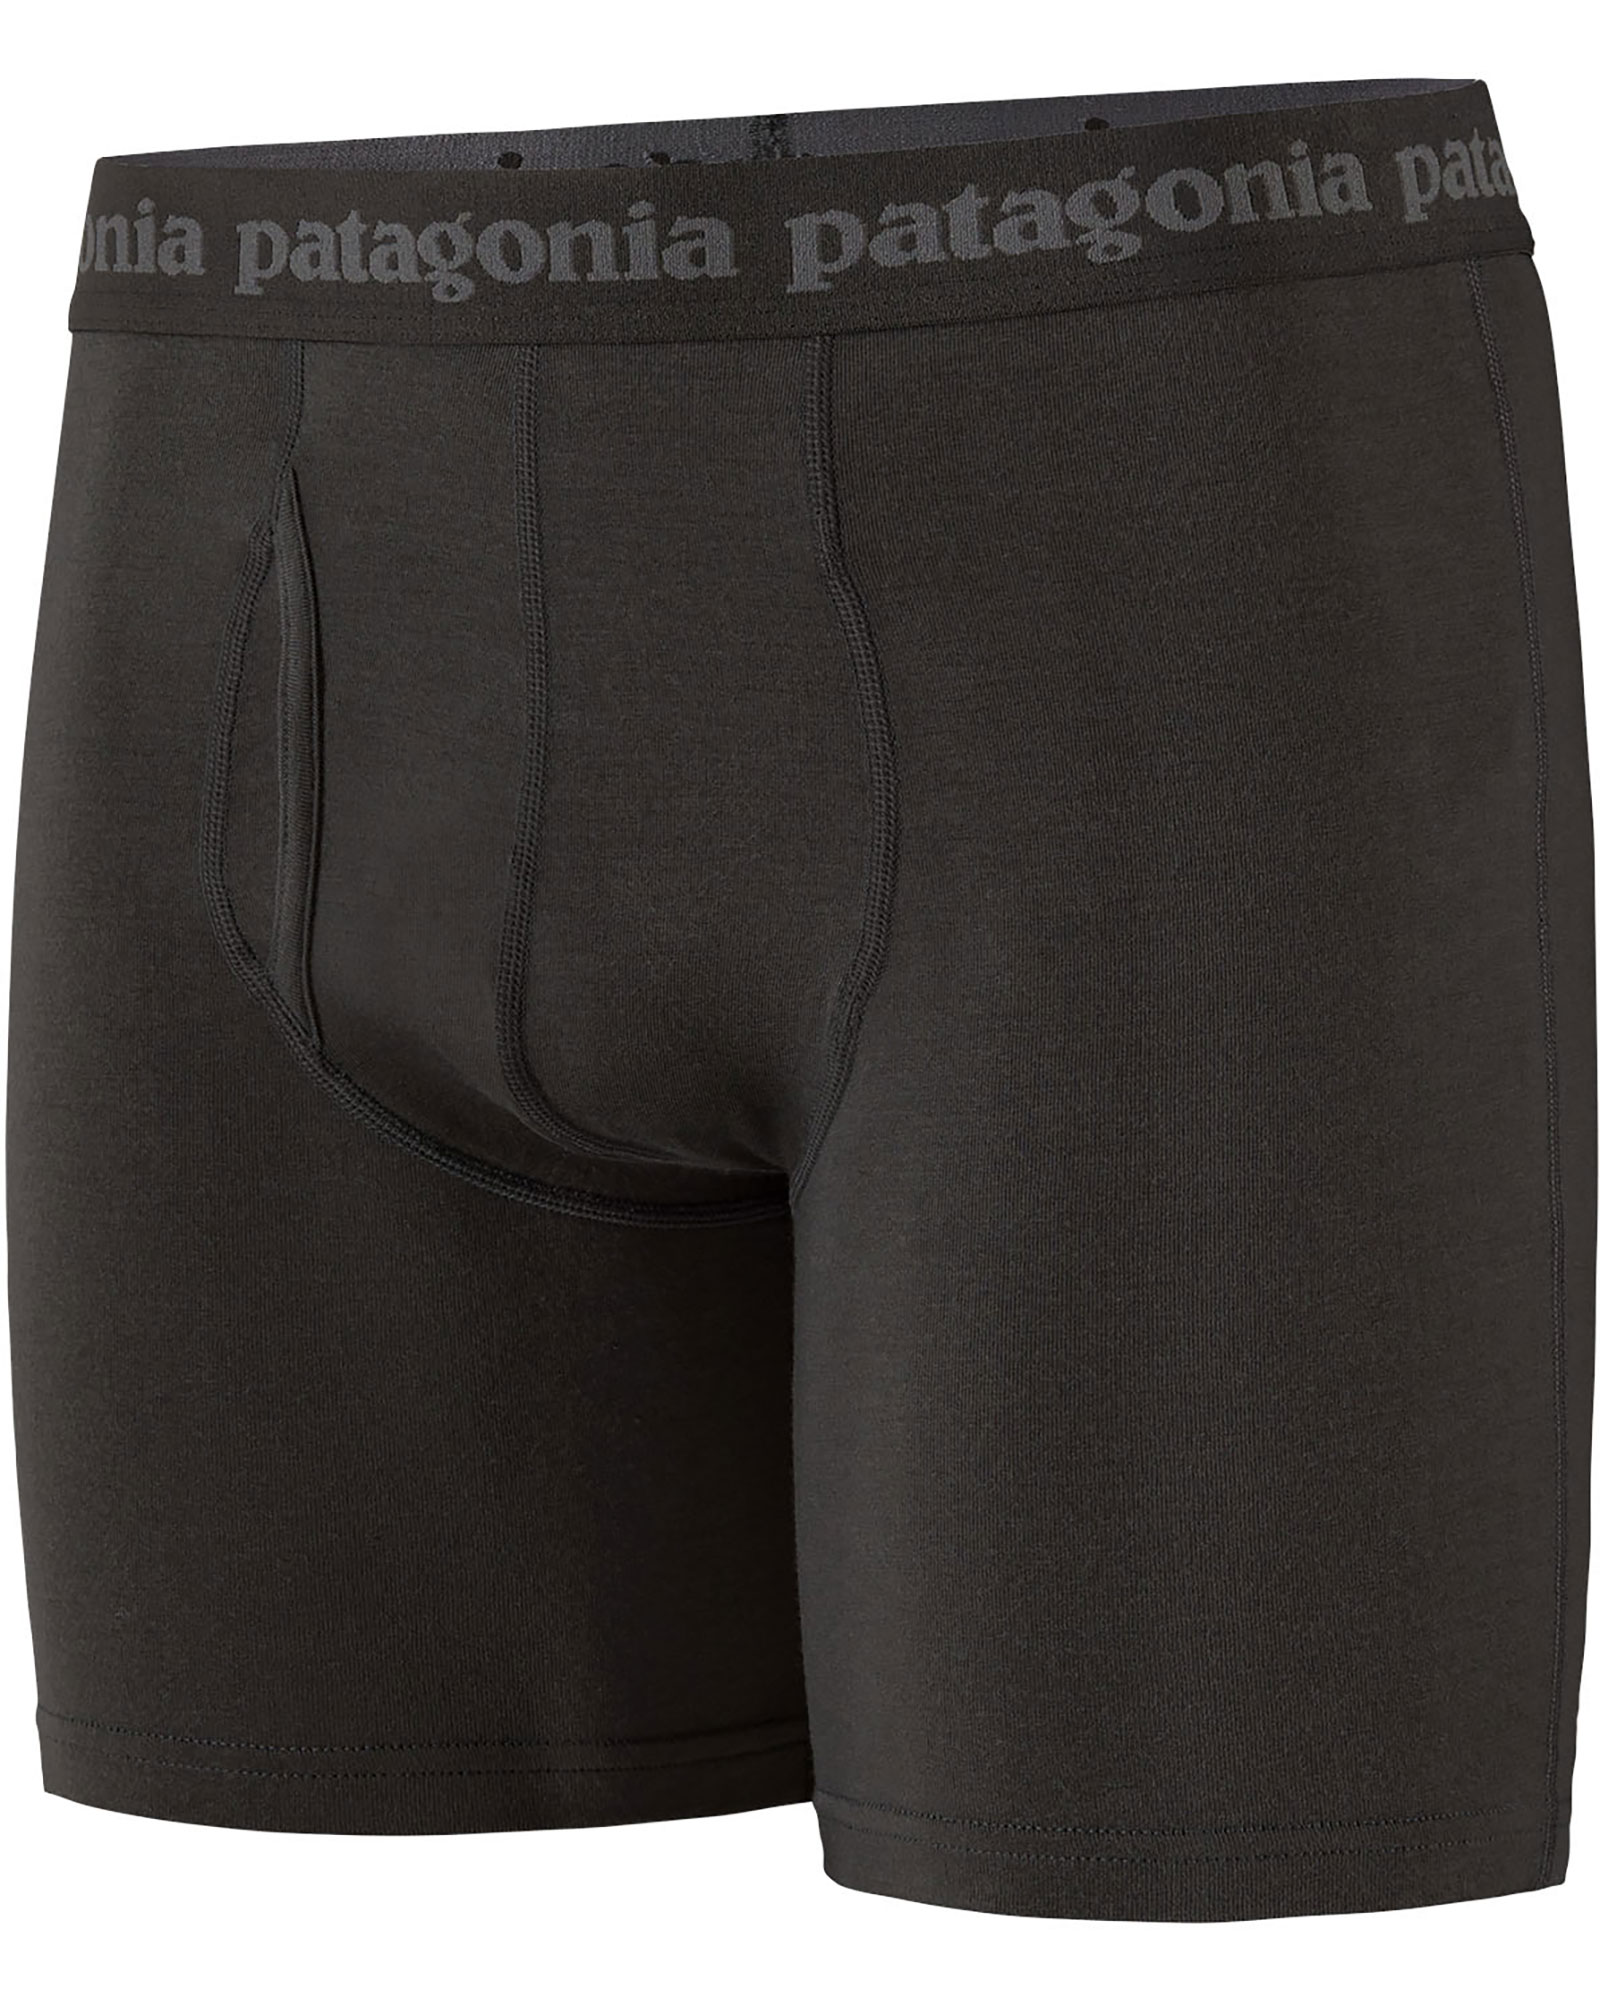 Patagonia Men’s Essential 6" Boxers - black S